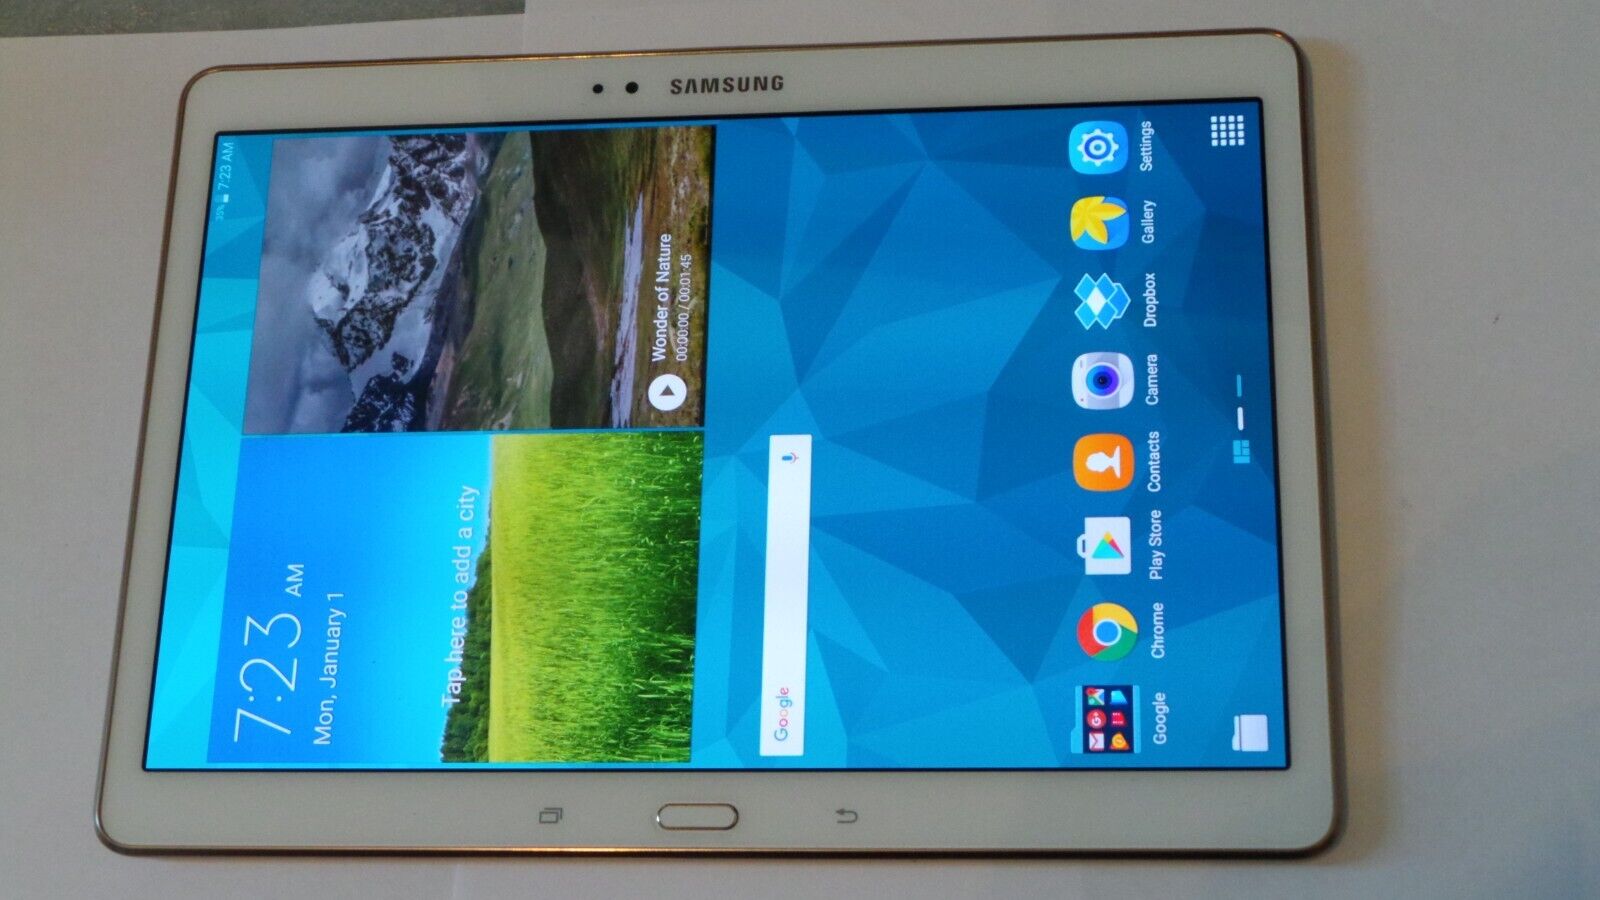 Samsung Galaxy Tab S SM-T800 16GB, Wi-Fi, 10.5 in - Dazzling White - Good Shape